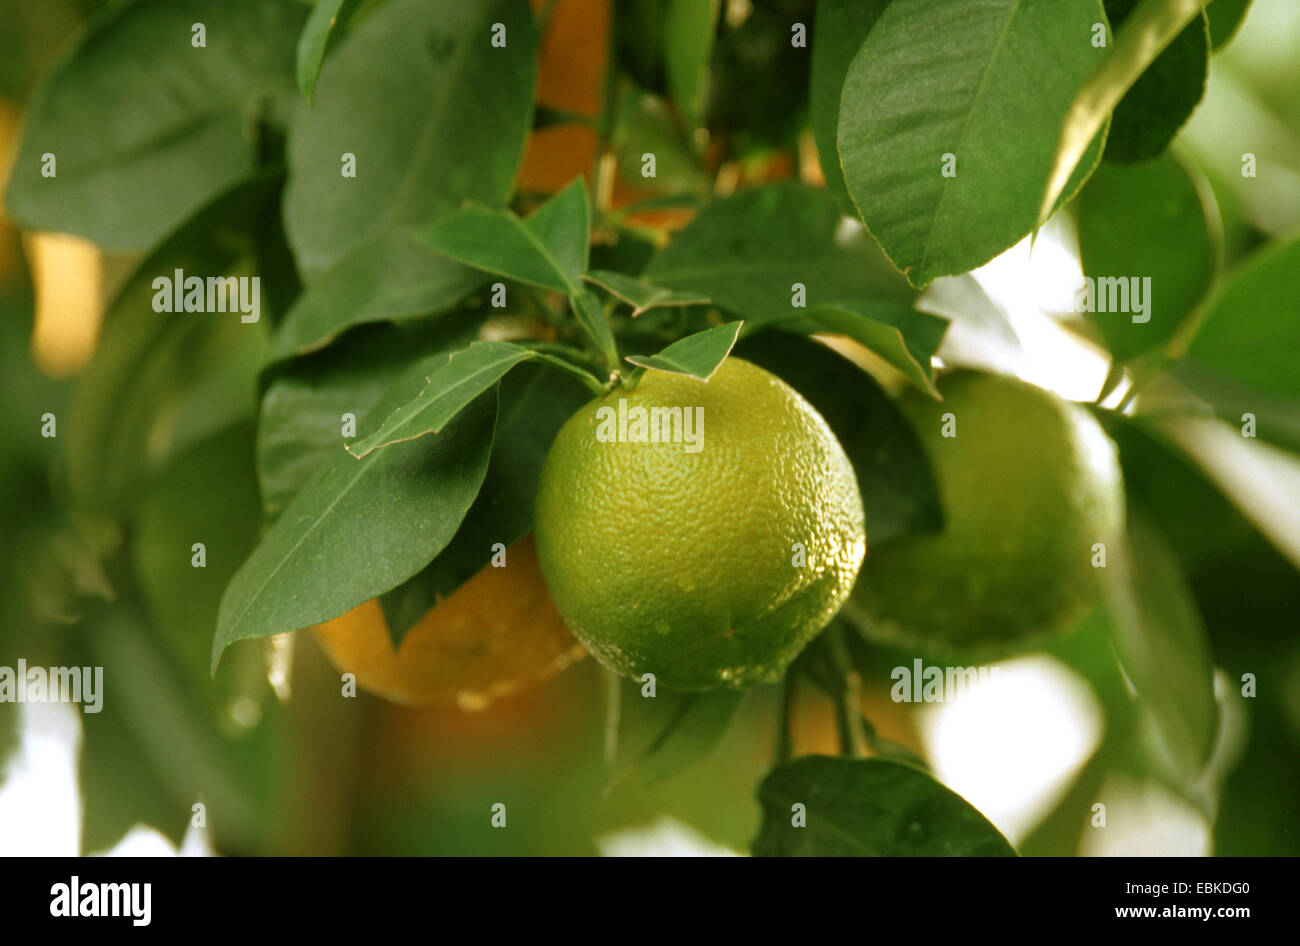 seville orange (Citrus aurantium, Citrus x aurantium), immature fruits Stock Photo